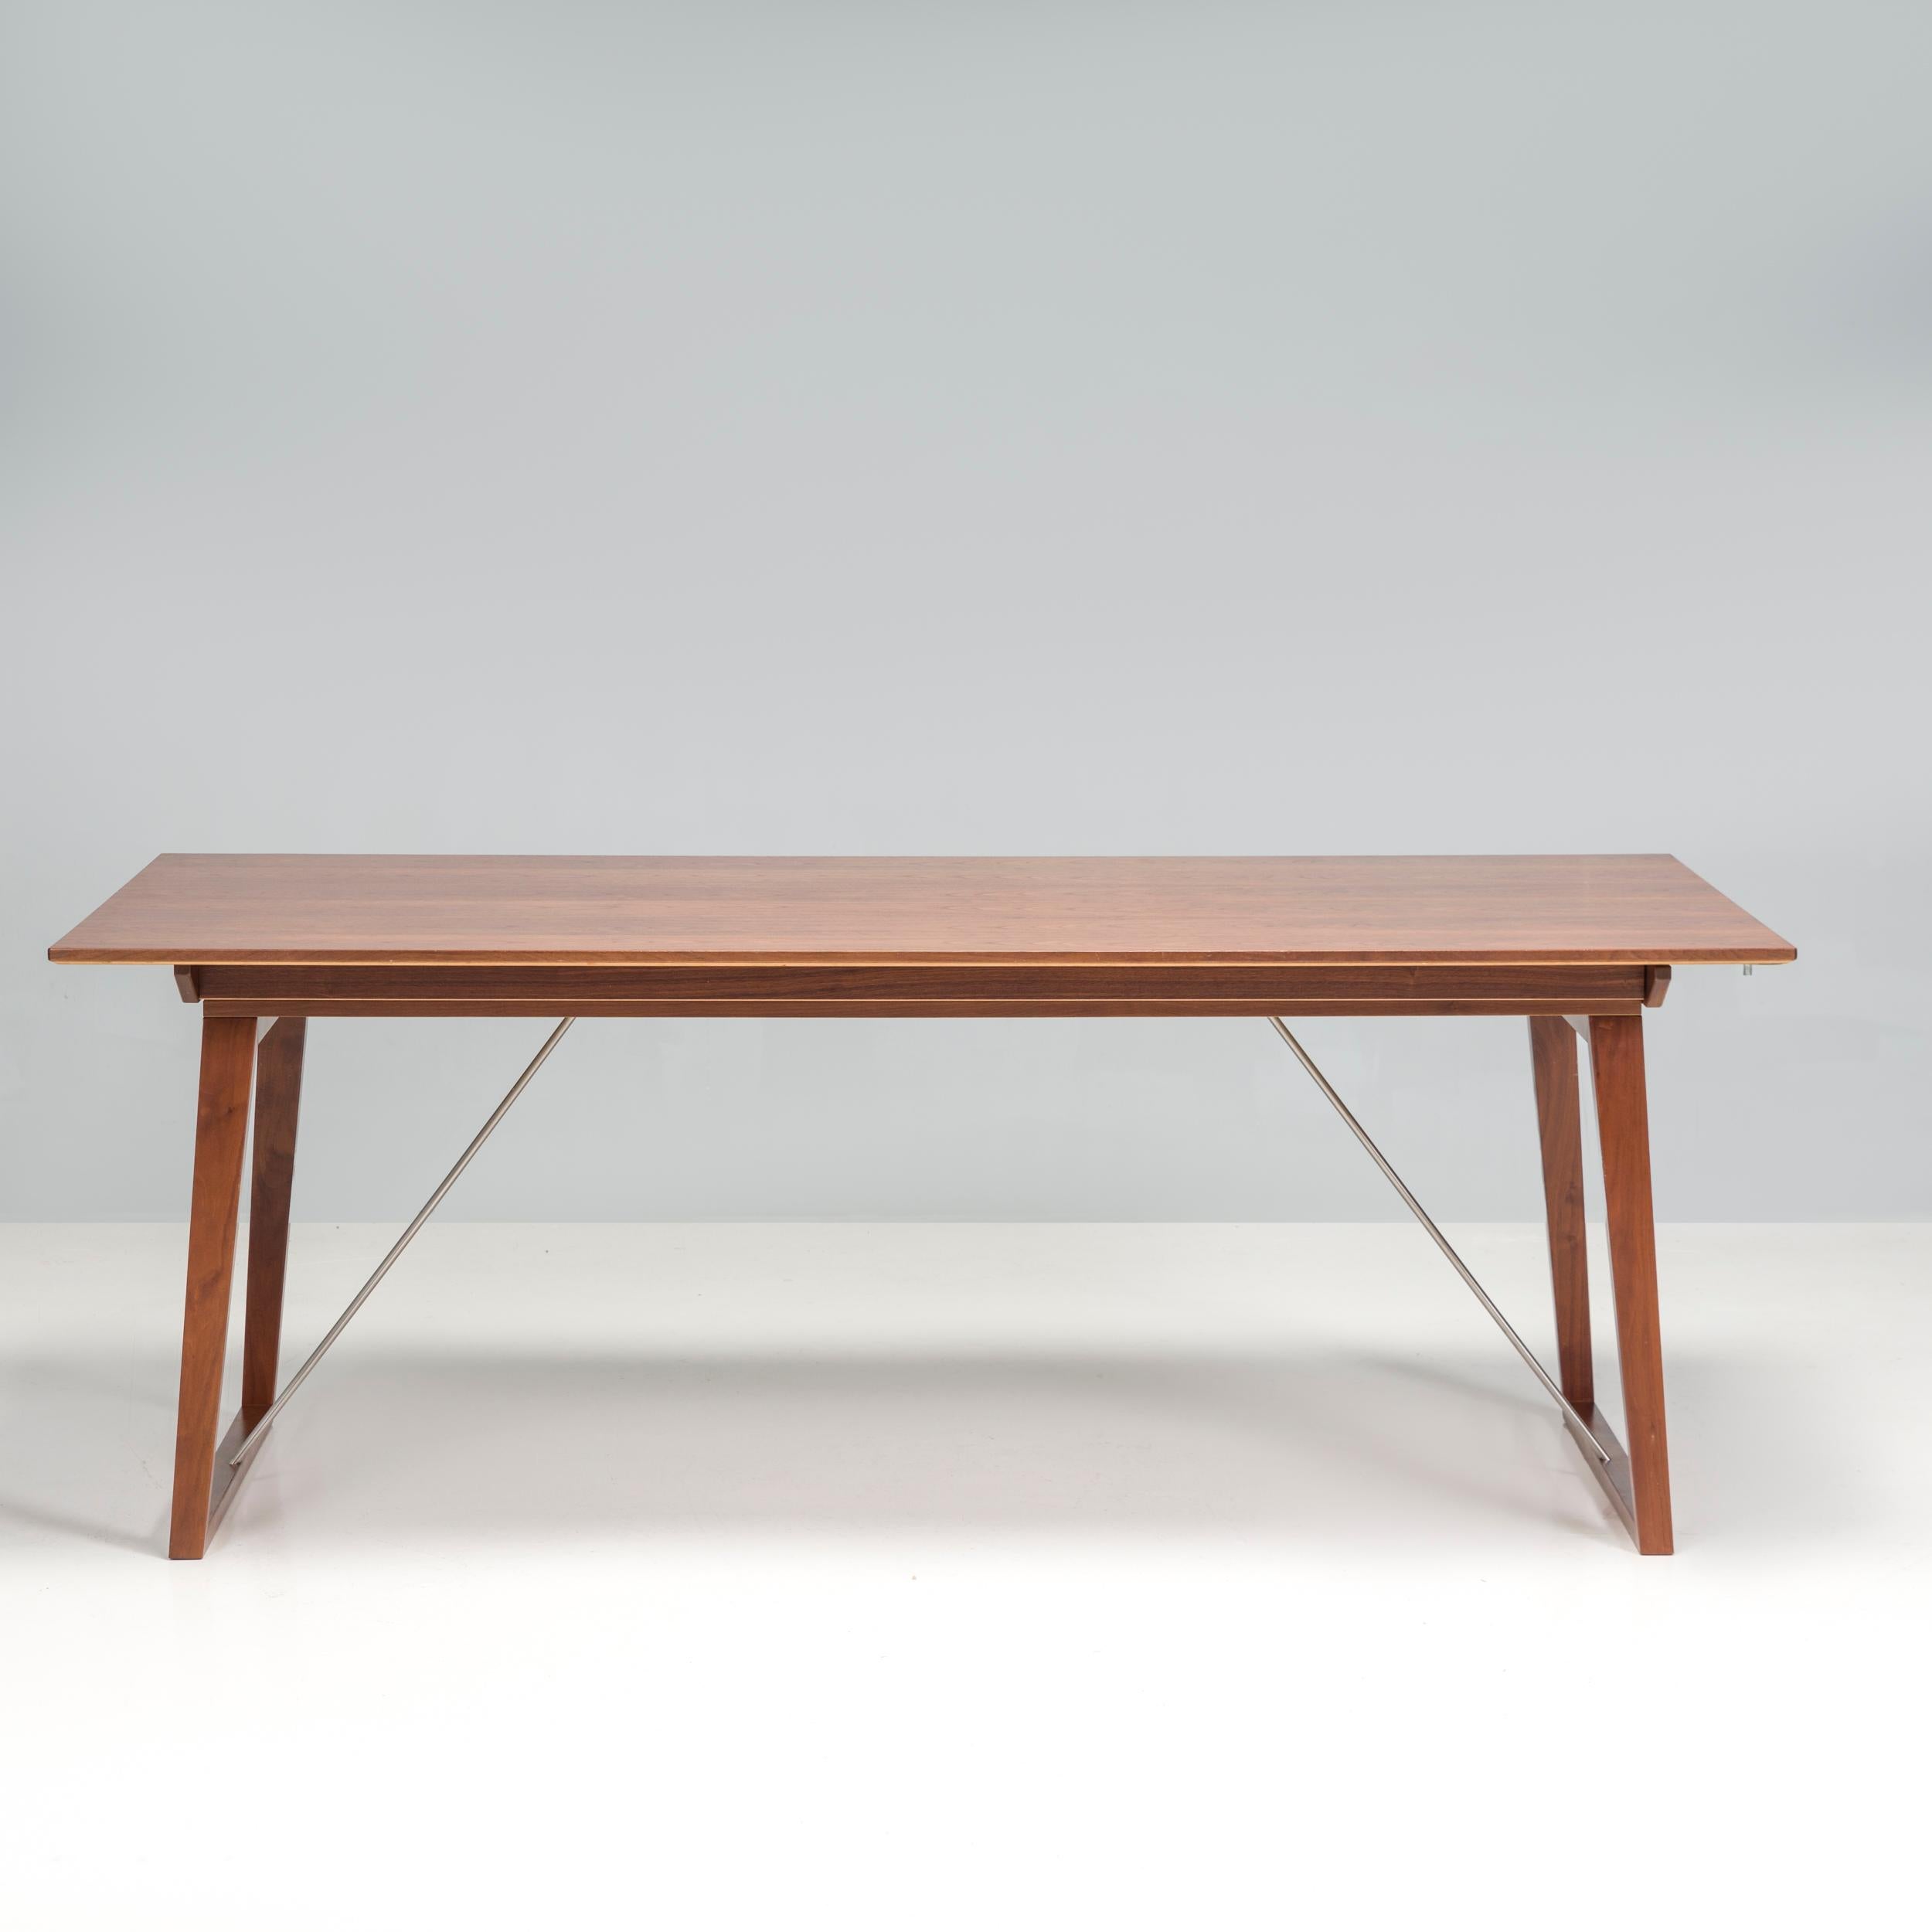 Conçue et fabriquée par Skovby, cette table de salle à manger modèle 38 est un fantastique exemple de design scandinave contemporain.

Construite en bois, la table présente des pieds trapézoïdaux angulaires avec un grand plateau rectangulaire